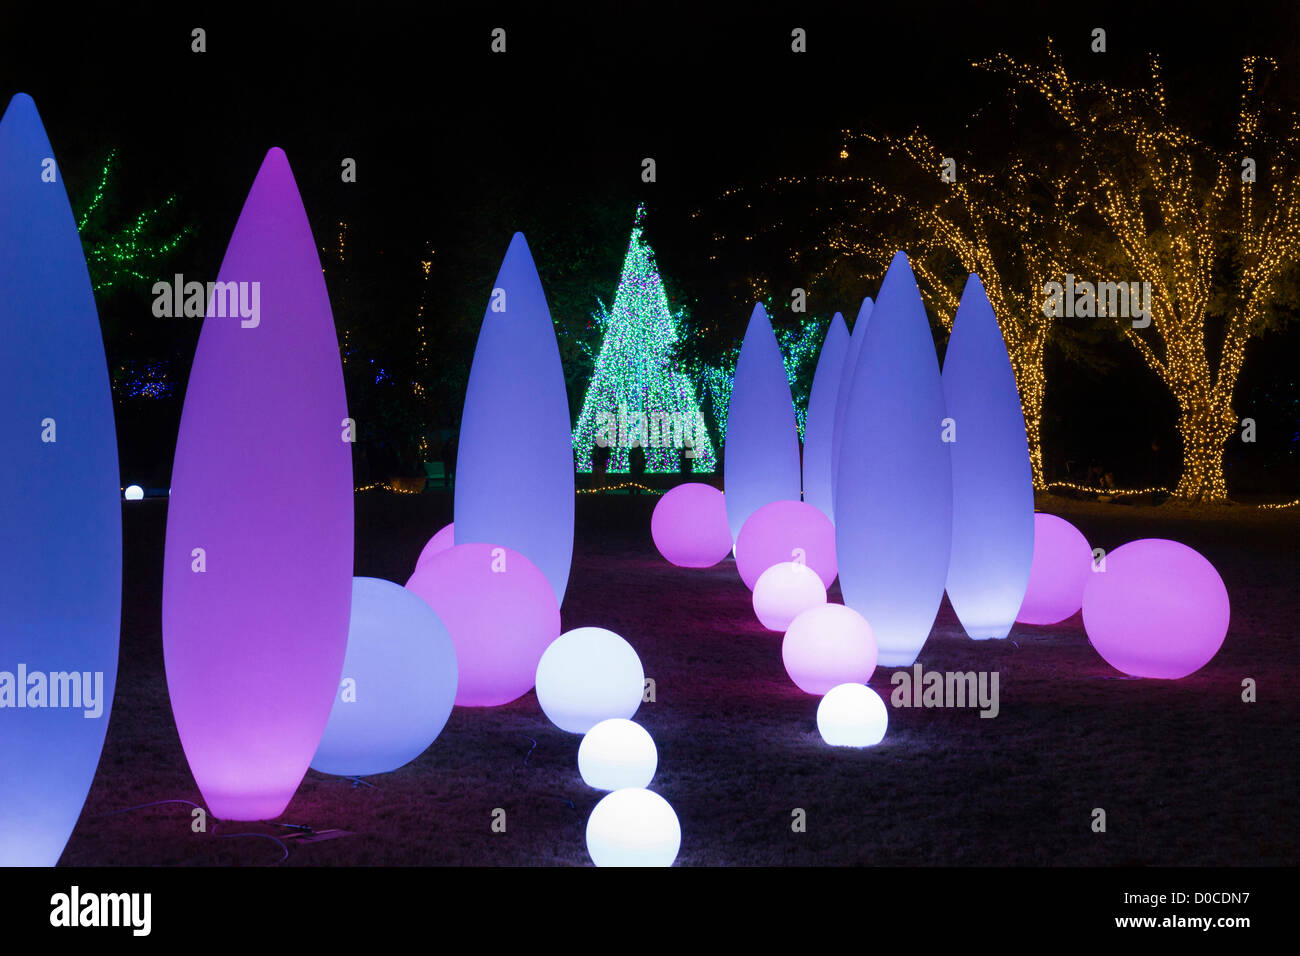 Atlanta Botanischer Garten (Georgia, USA) Urlaub Weihnachtsbeleuchtung am 19. November 2012 ins Leben gerufen. Faszinierende Beleuchtung Dekorationen mit musikalischer Begleitung befinden sich über das Gelände und zieht Tausende von Besuchern. Die Veranstaltung wird bis 5. Januar 2013 fortgesetzt. Stockfoto